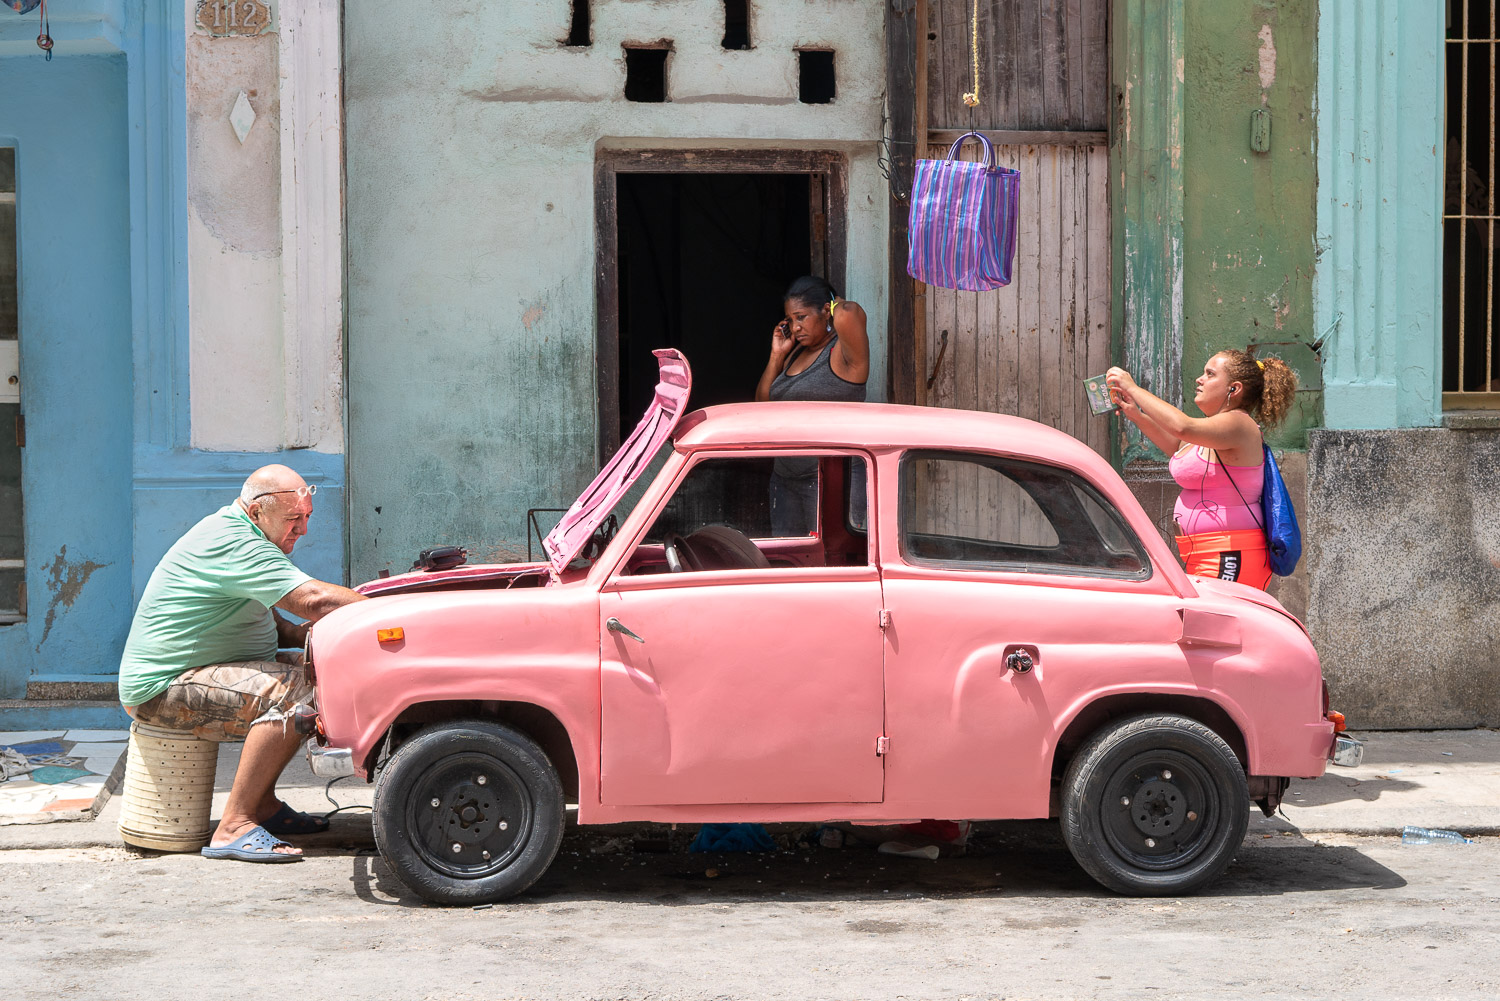 Centro Habana – Cars